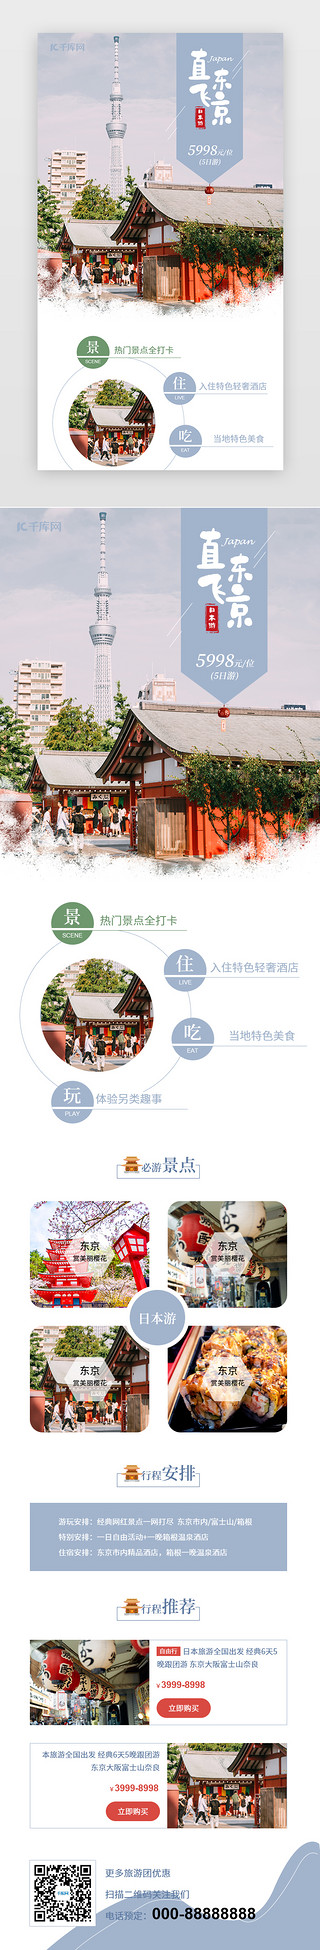 h5长图UI设计素材_蓝色小清新日本旅游宣传促销h5长图